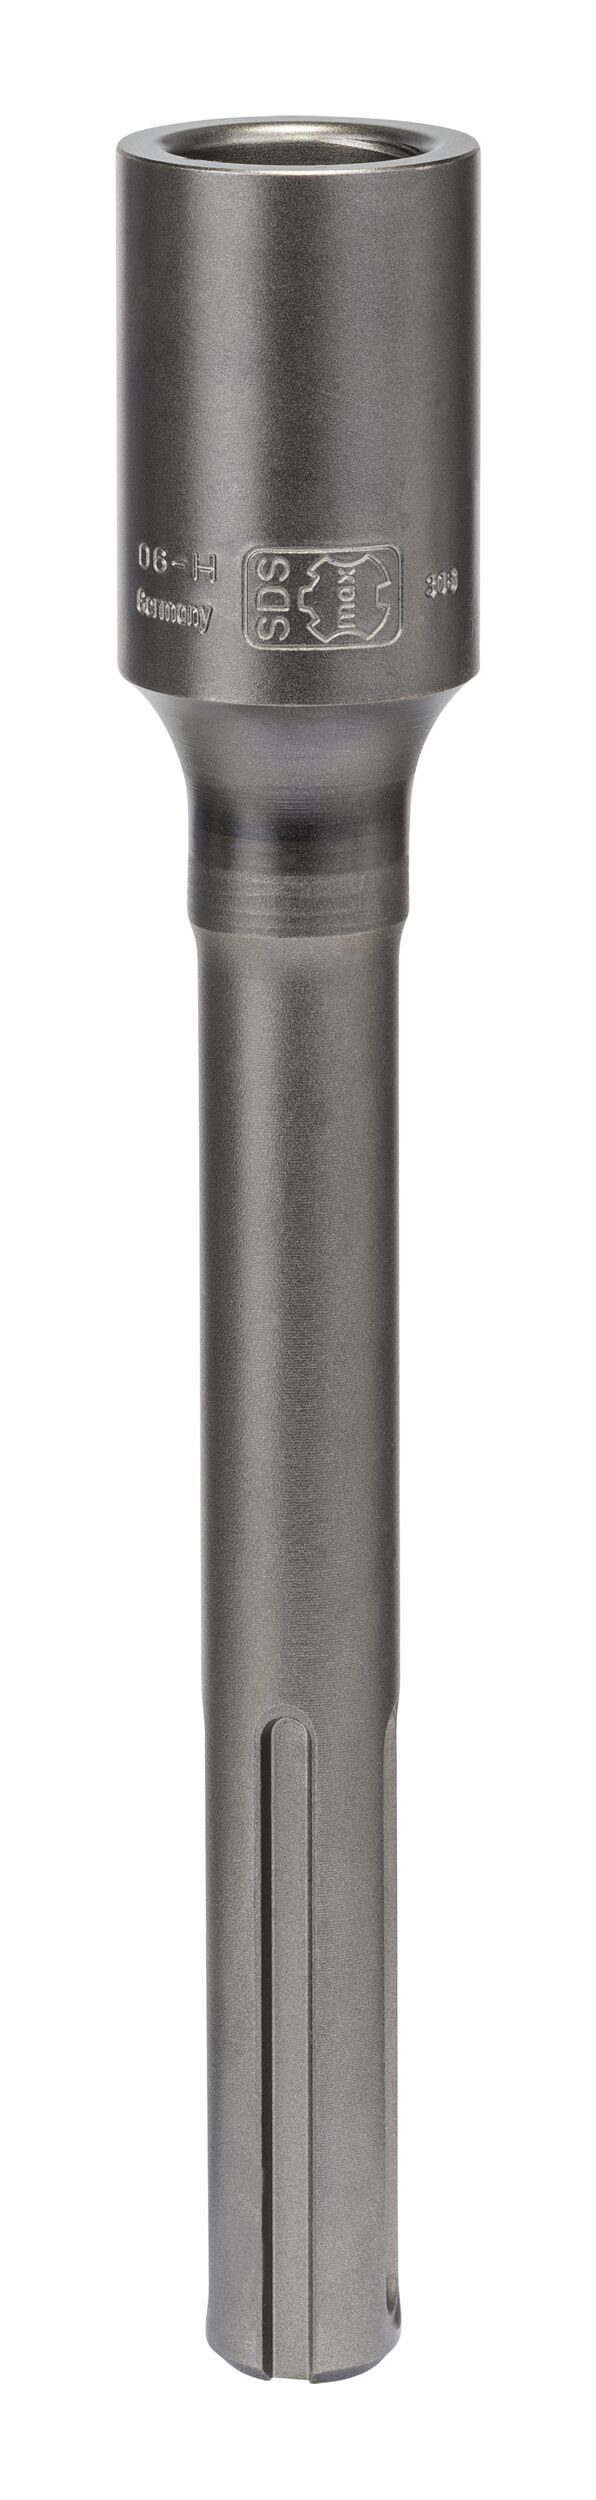 Universalbohrer, max Adapter BOSCH - für 200 mm Hohlbohrkronen zweiteilige SDS